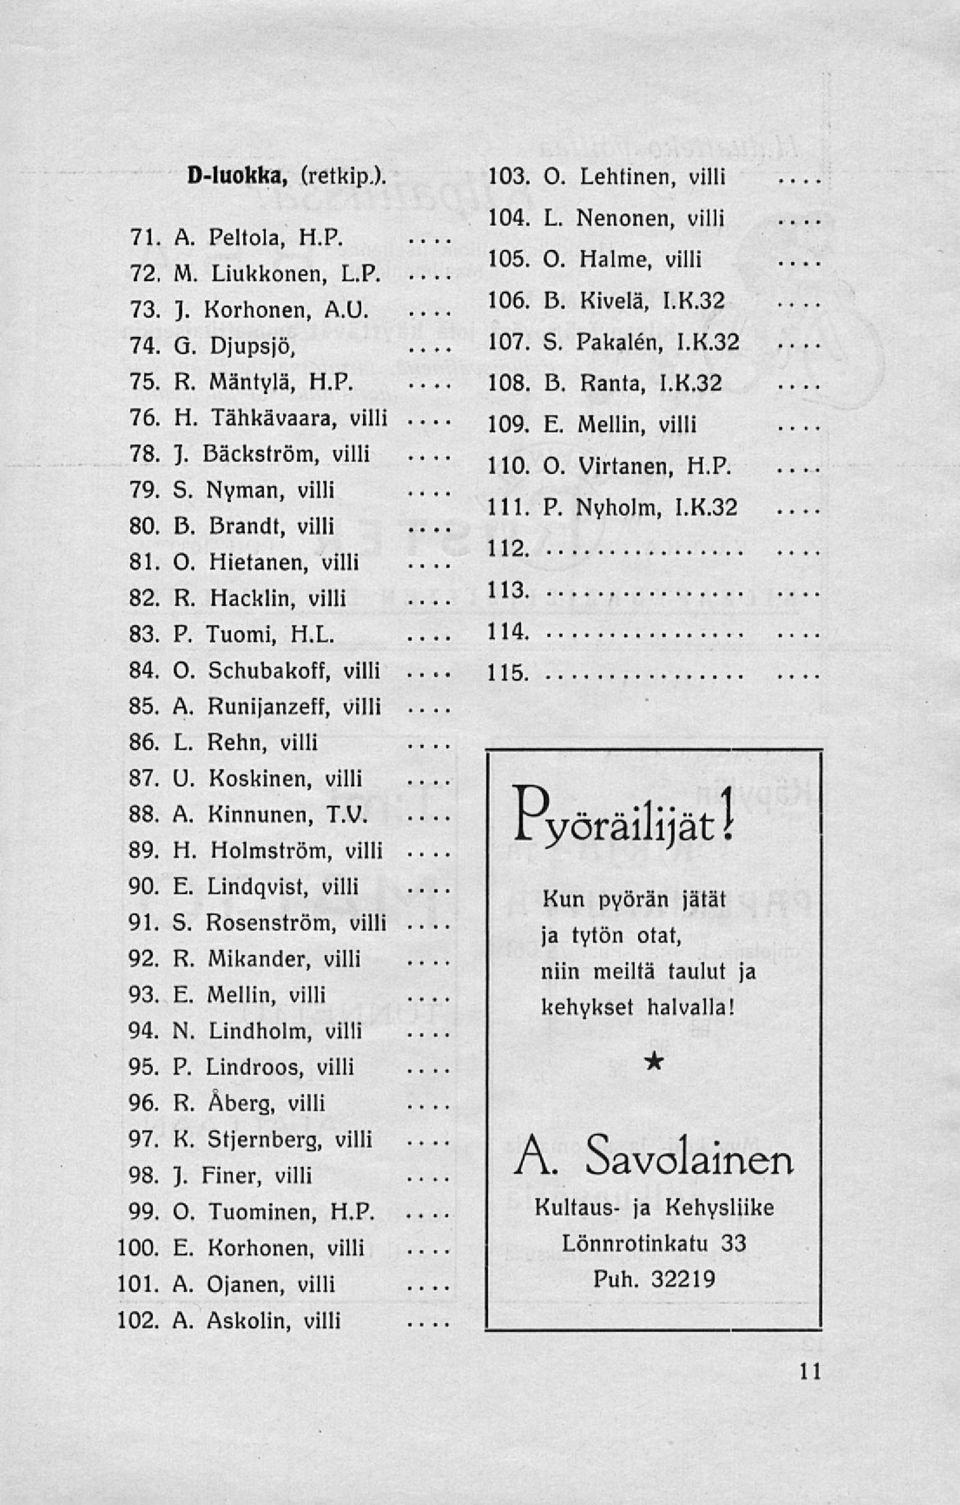 B. Kivelä, 1.K.32 107. S. Pakalén, 1.K.32 108. B. Ranta, 1.K.32 109. E. Mellin, villi 110. O. Virtanen, H.P. 111. P. Nyholm, 1.K.32 112. 113. 114. 115. 86 L. Rehn, villi 87 U. Koskinen, villi 88, A.